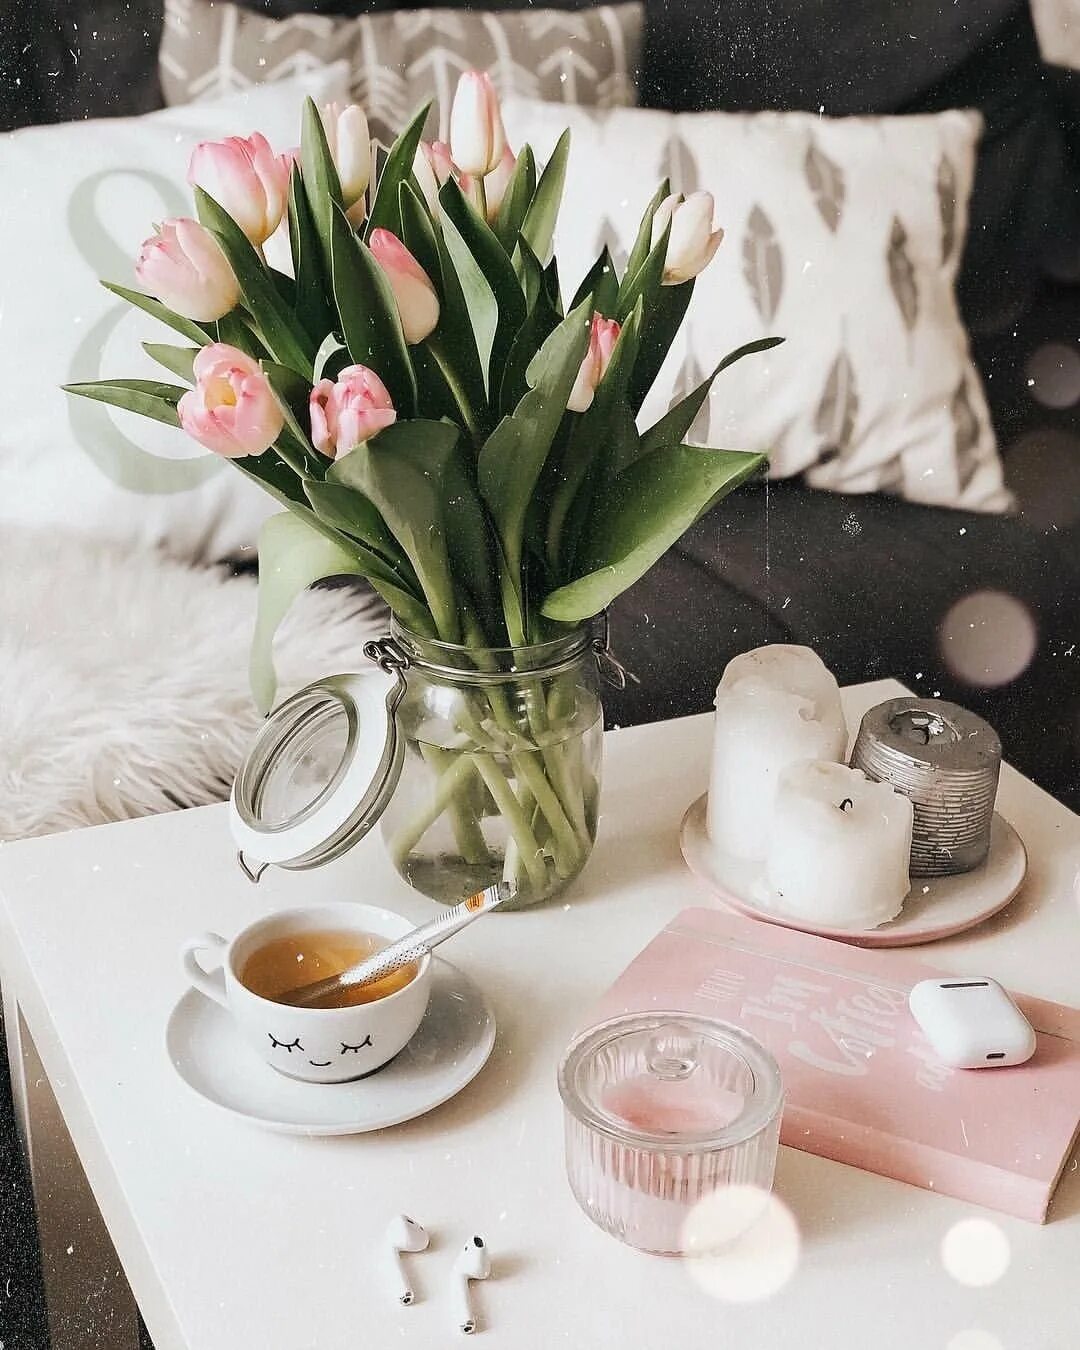 Красивый завтрак с цветами. Кофе цветы стильные. Завтрак с тюльпанами. Букет тюльпанов к завтраку. Кофе и тюльпаны картинки